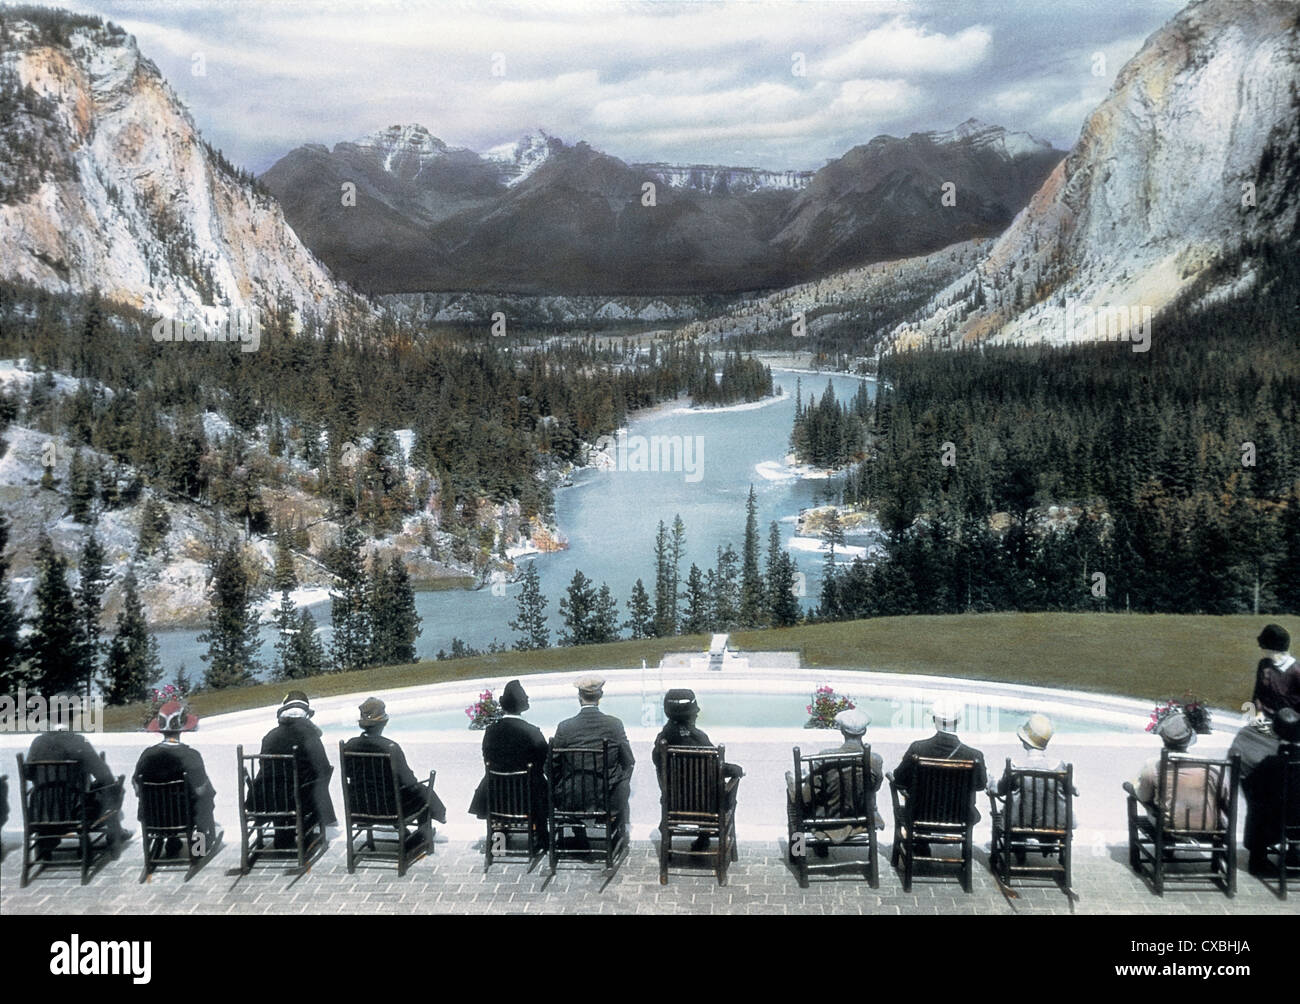 Photo colorée des touristes assis sur une terrasse qui surplombe une piscine et une vue panoramique sur la vallée de la rivière Bow, Banff Springs Hotel, Banff, Canada, 1916. (Photo de Burton Holmes) Banque D'Images